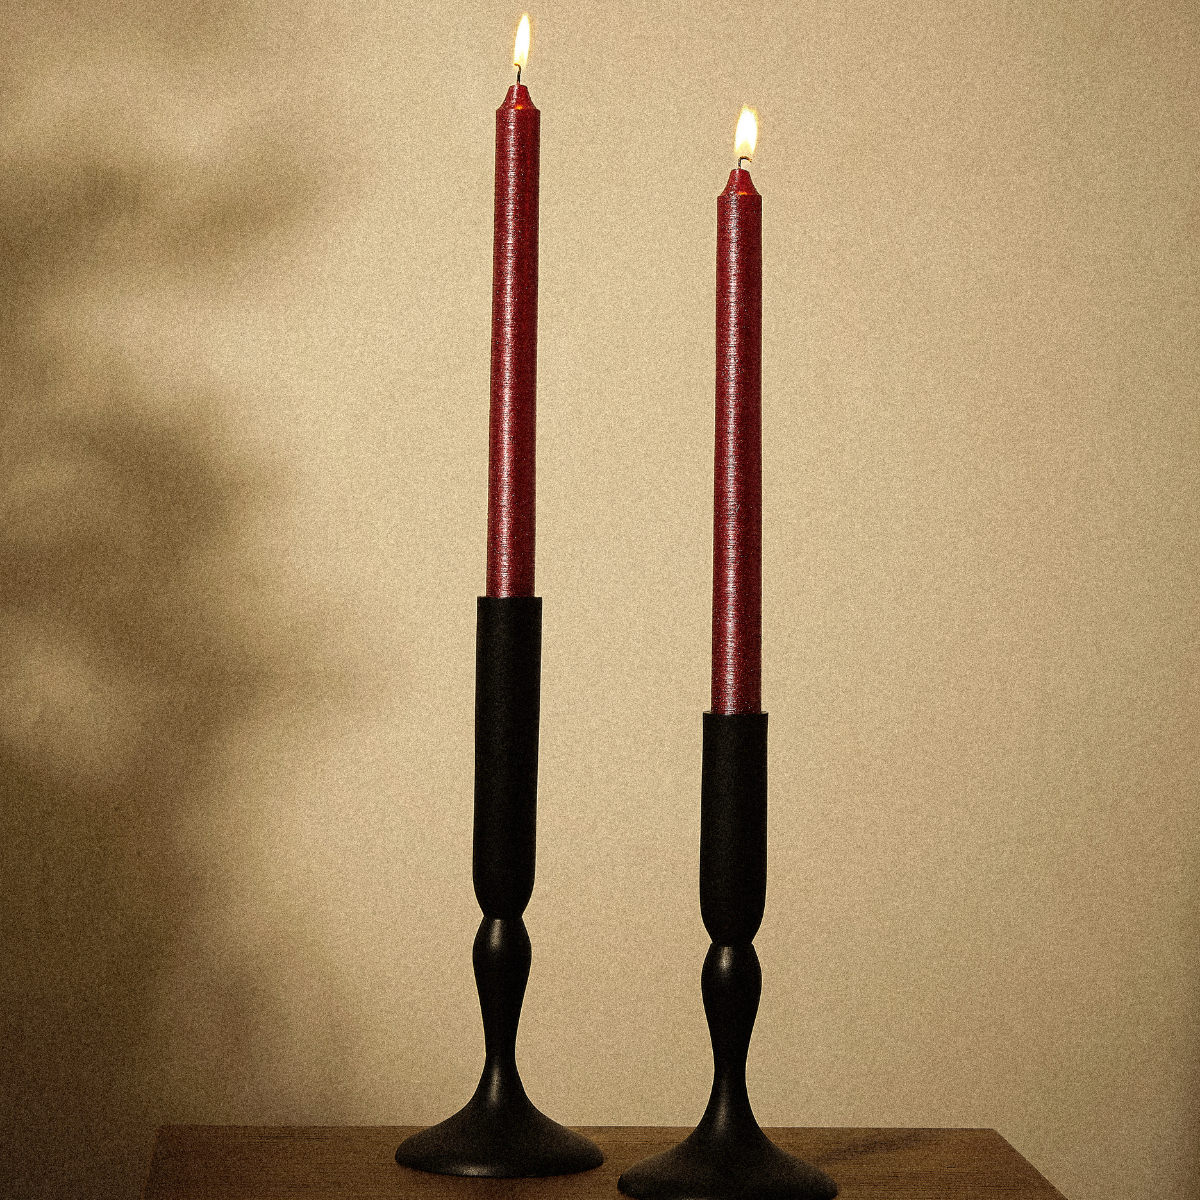 6 velas para candelabro STRIPES